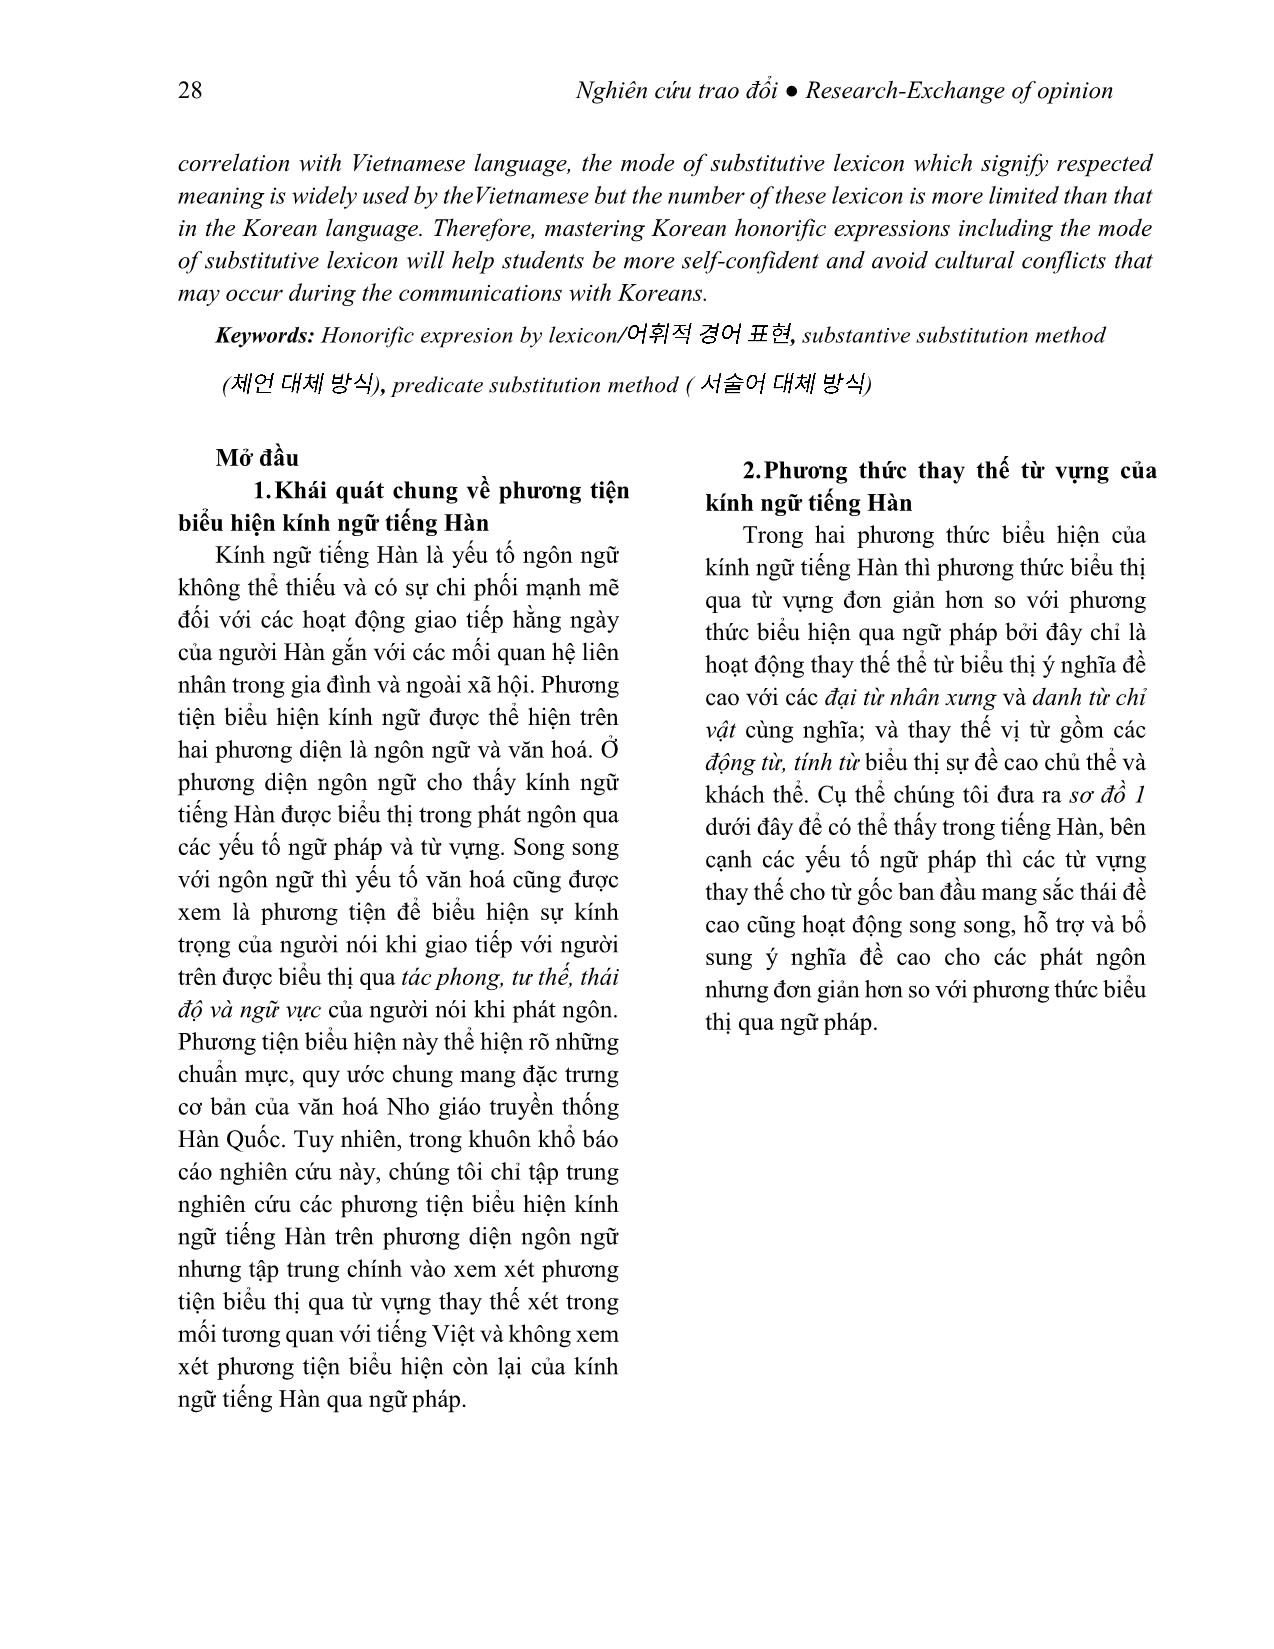 Kính ngữ tiếng Hàn qua phương thức thay thế từ vựng (Xét trong mối tương quan với tiếng Việt) trang 2